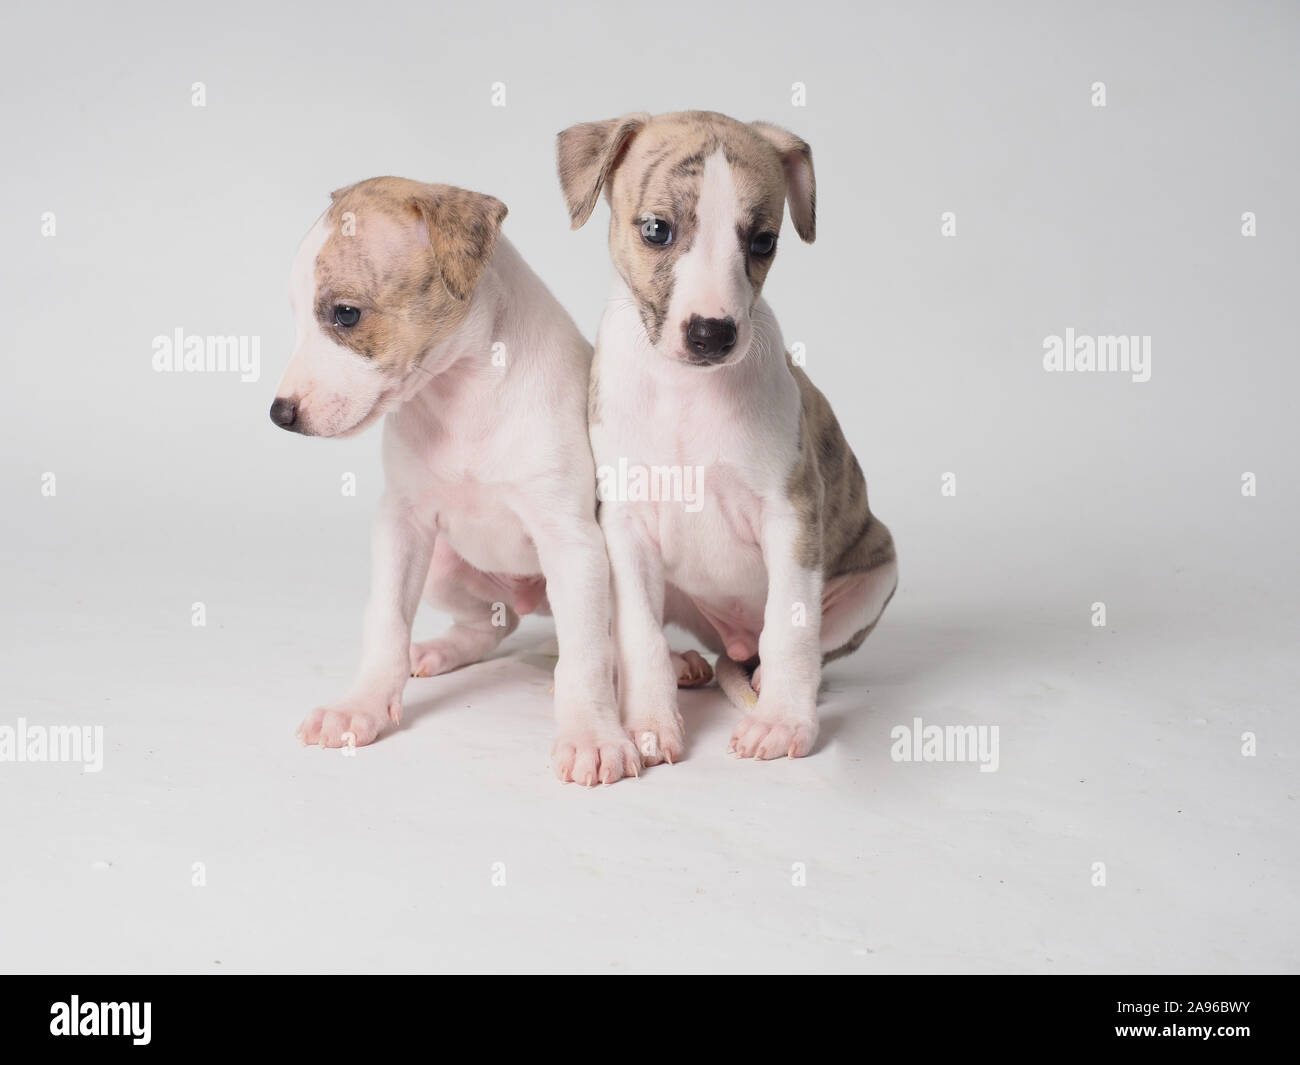 Deux chiot de whippets race de chien avec 36 jours d'âge tabby et blanc Banque D'Images